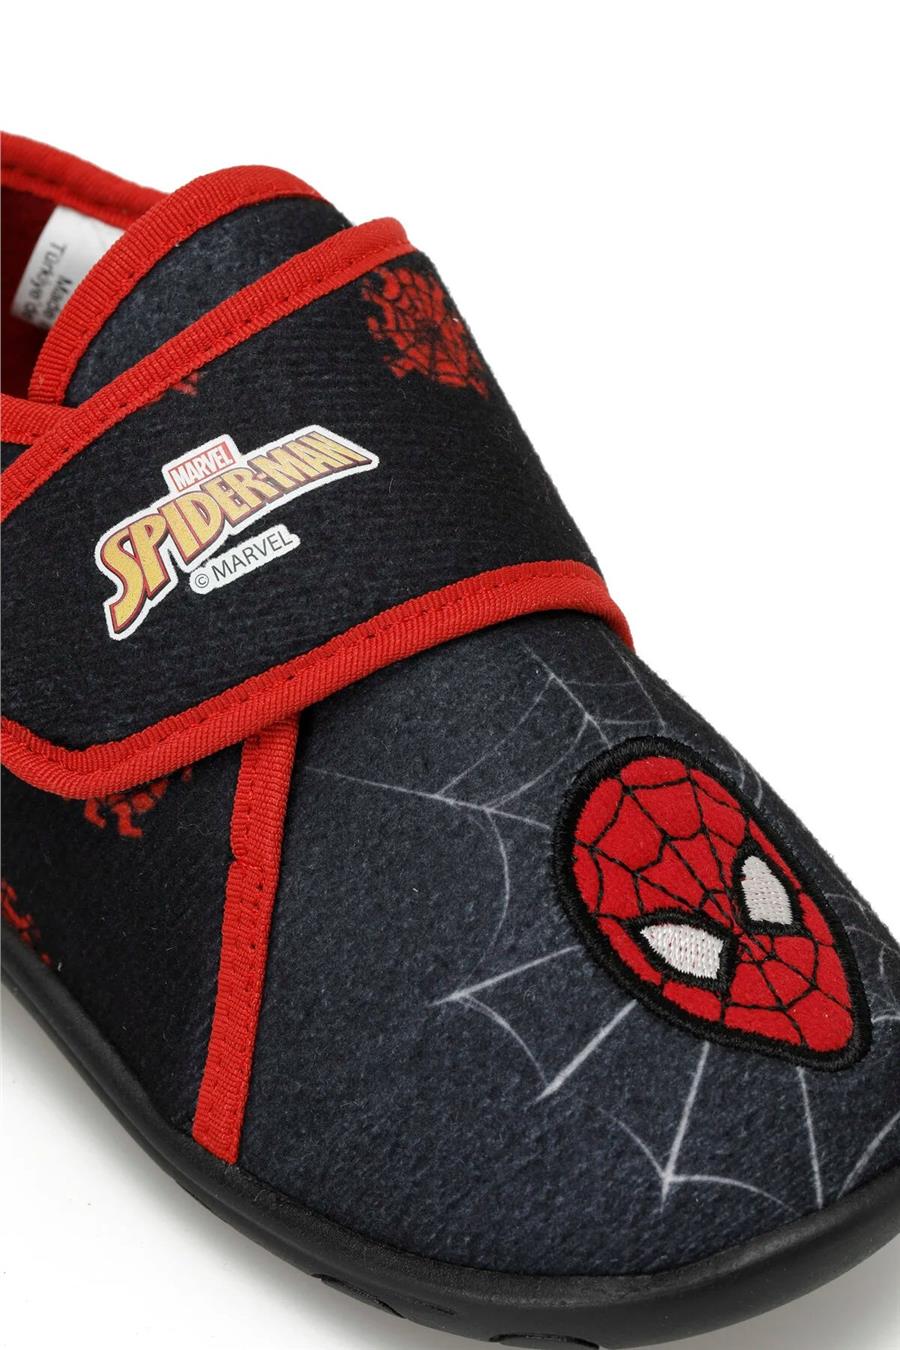 Spiderman Tarbın P3Pr Siyah Patik Erkek Çocuk Panduf Ayakkabı